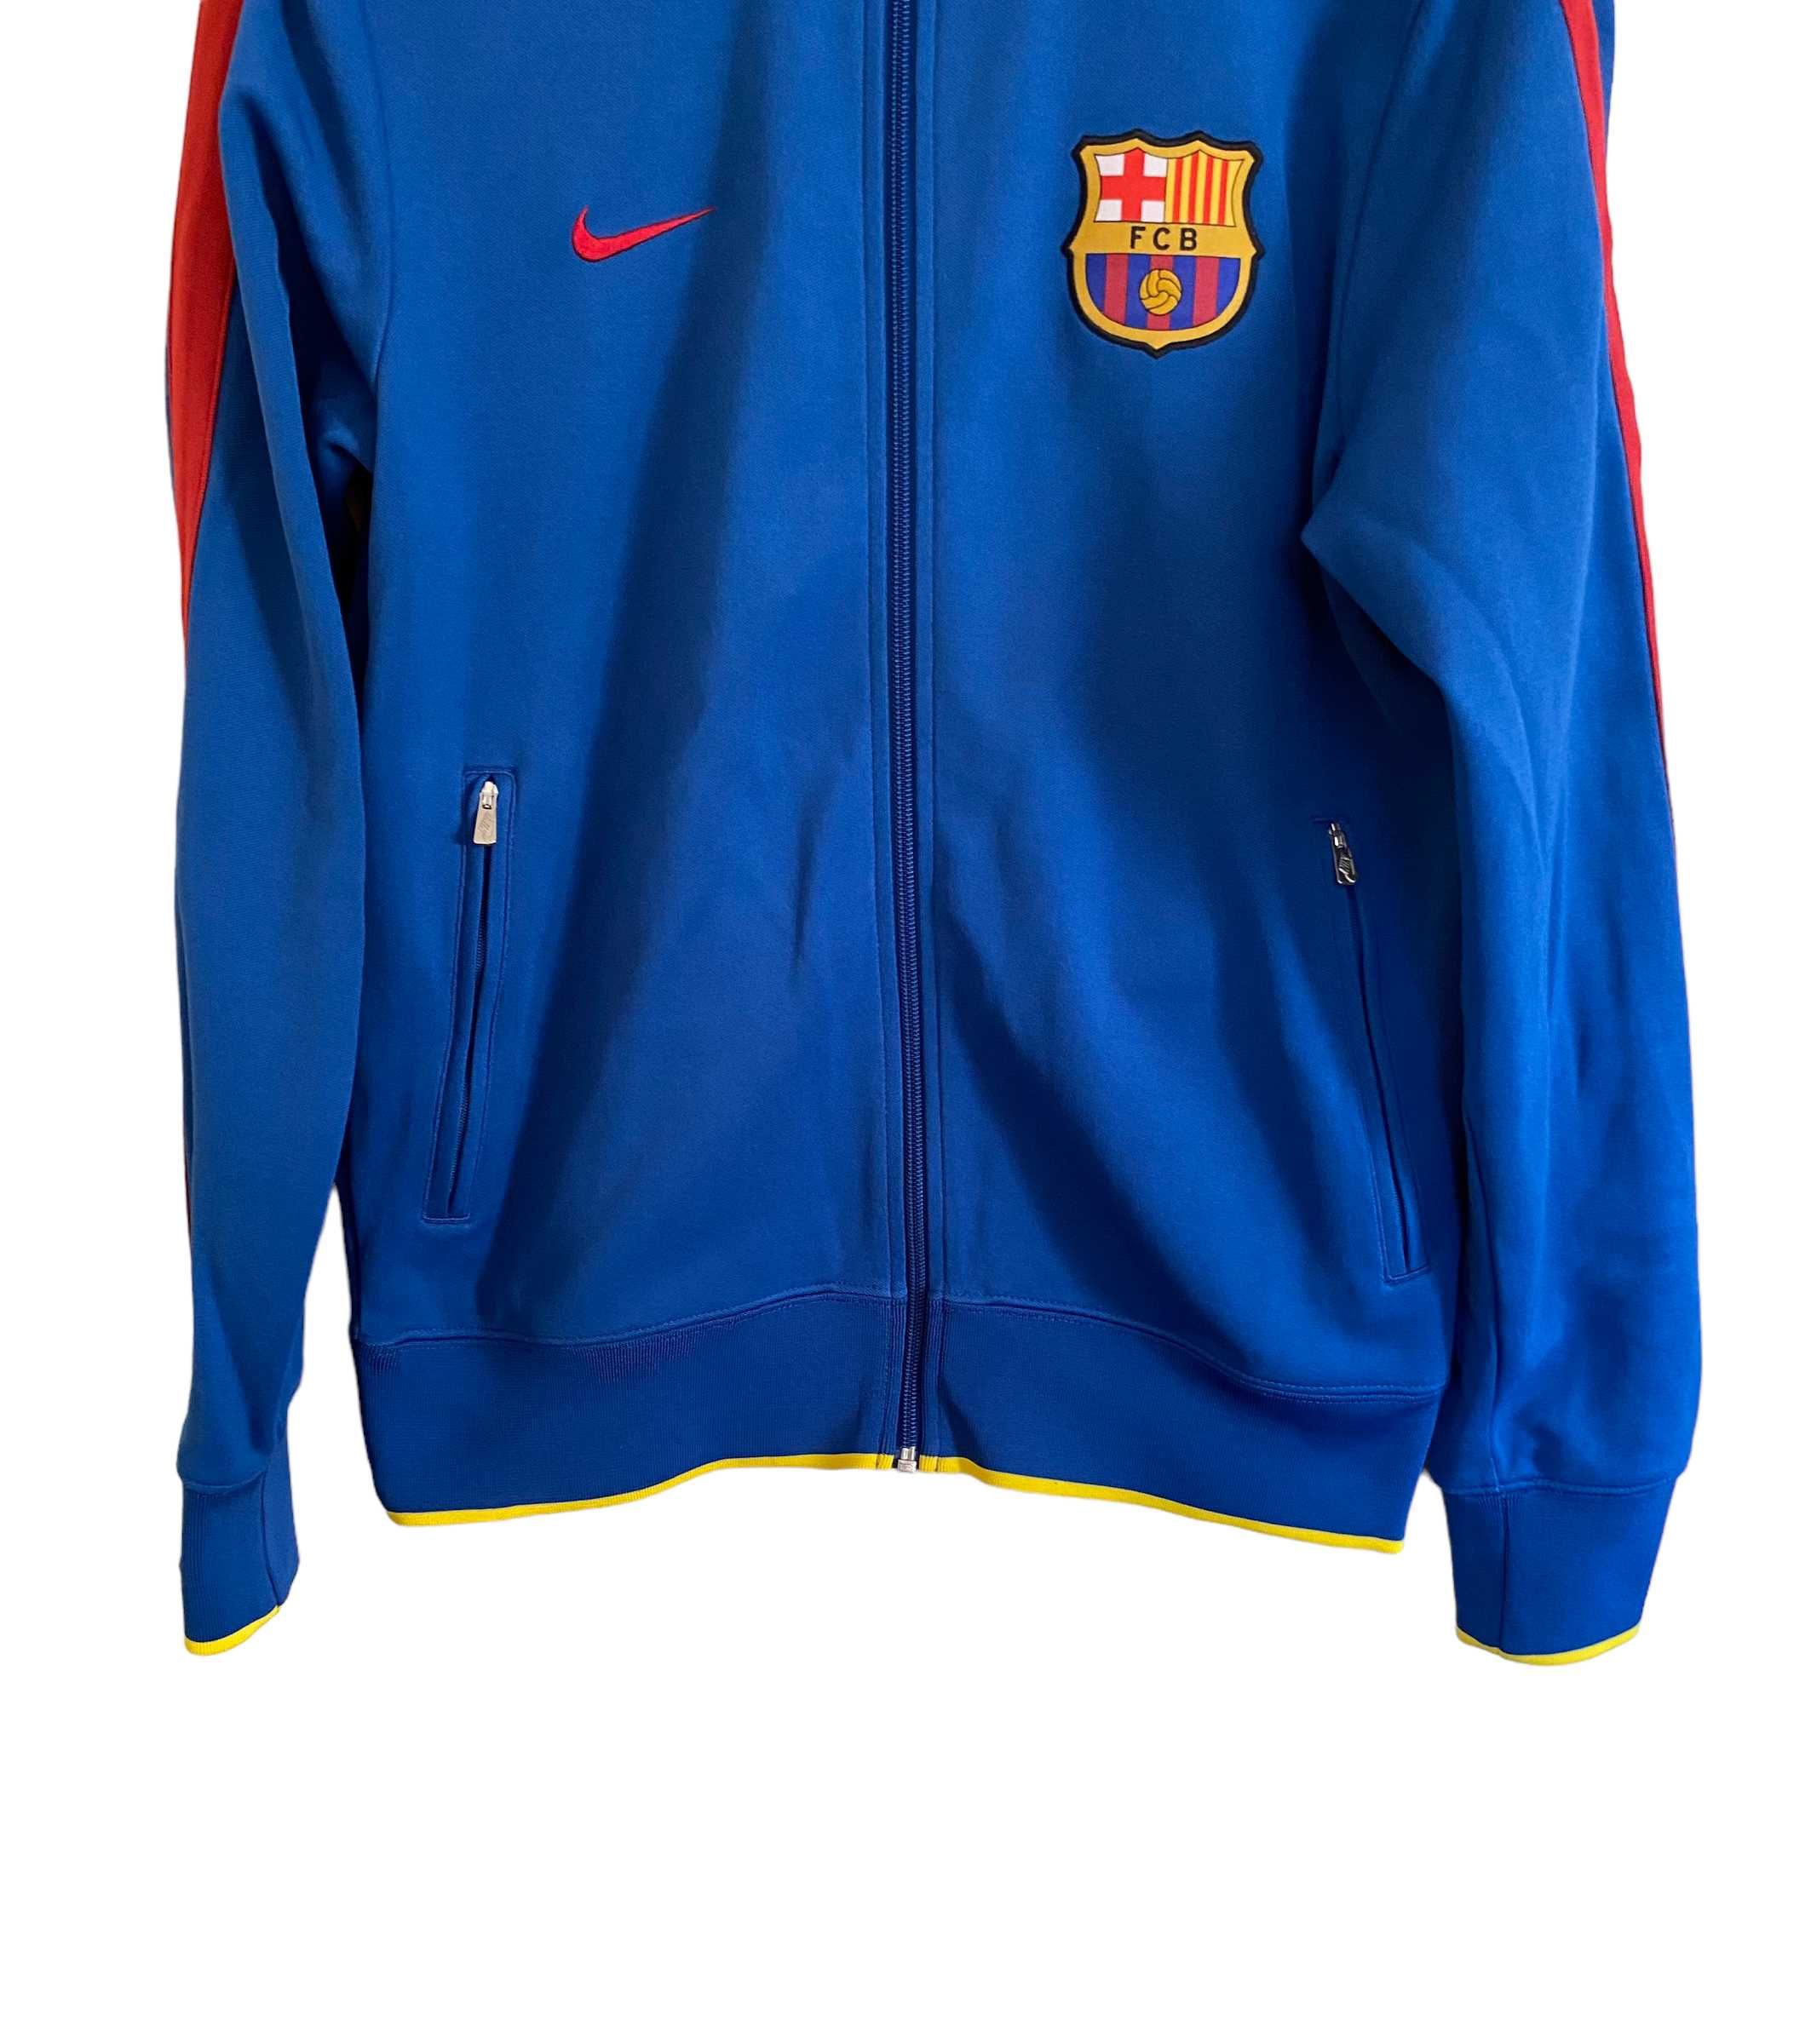 Nike FC Barcelona bluza na zamek, rozmiar M, stan dobry